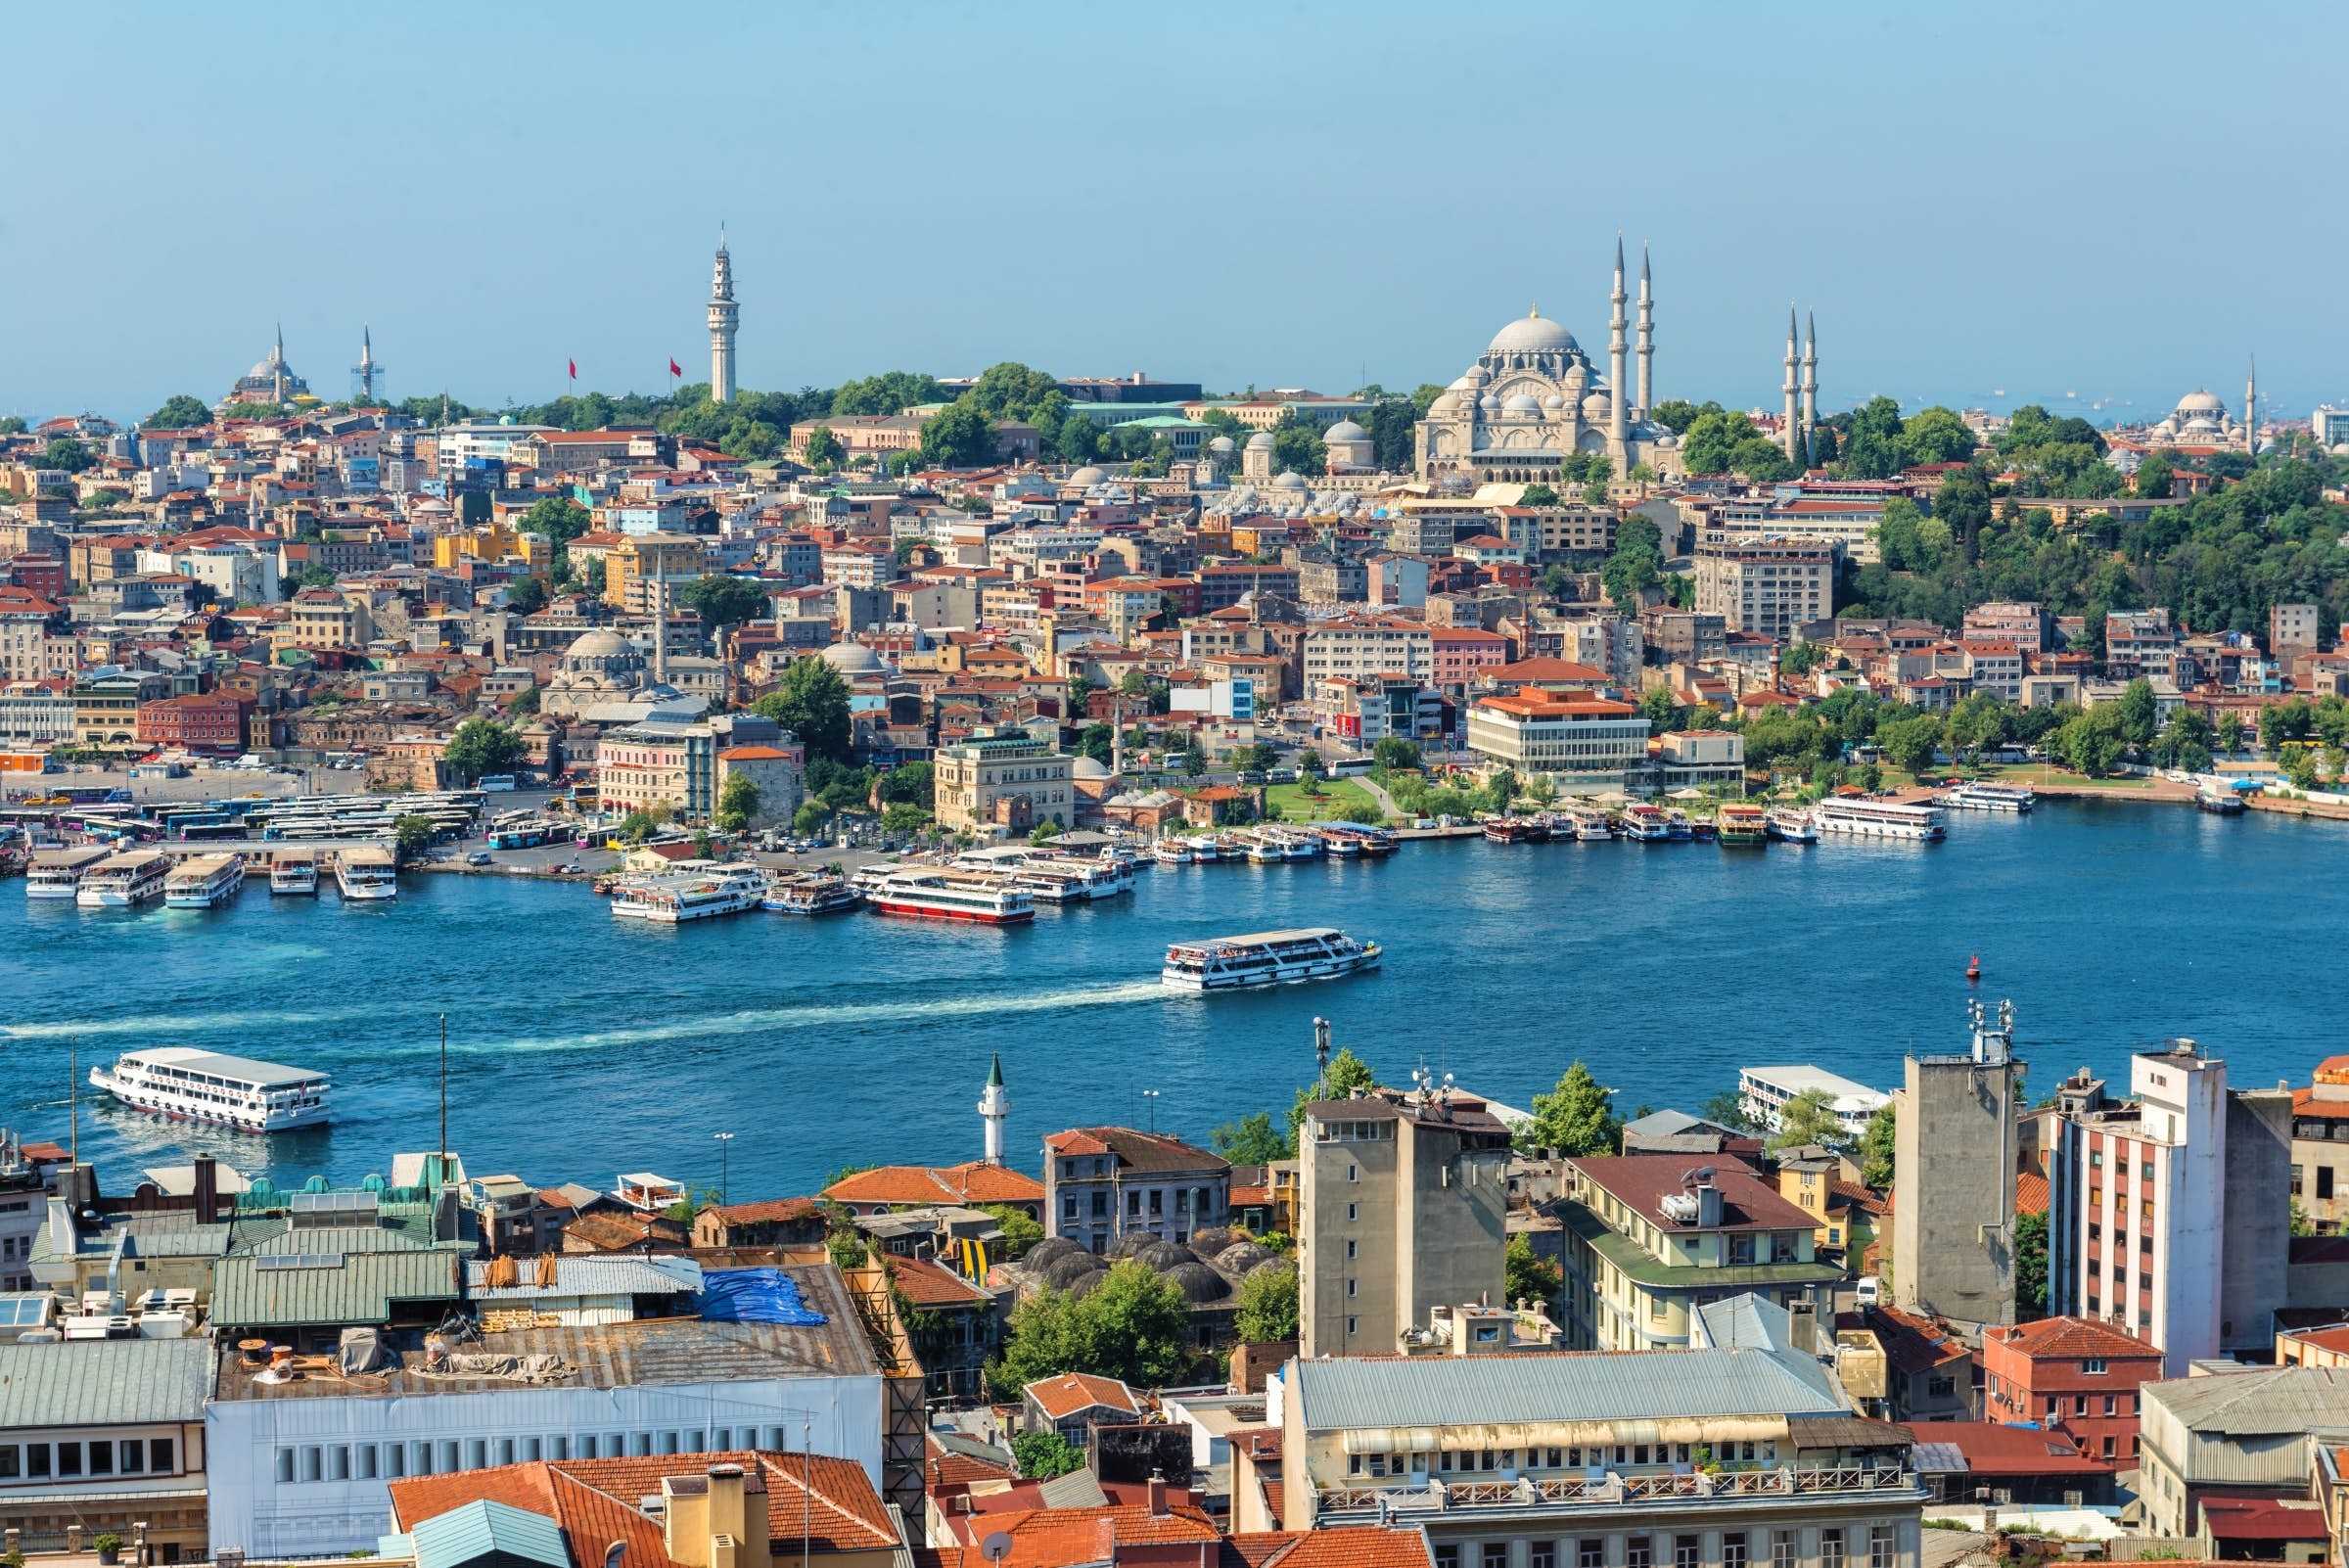 وردت عدة تساؤلات شائعة عن شراء العقارات في تركيا حول قضايا متنوعة